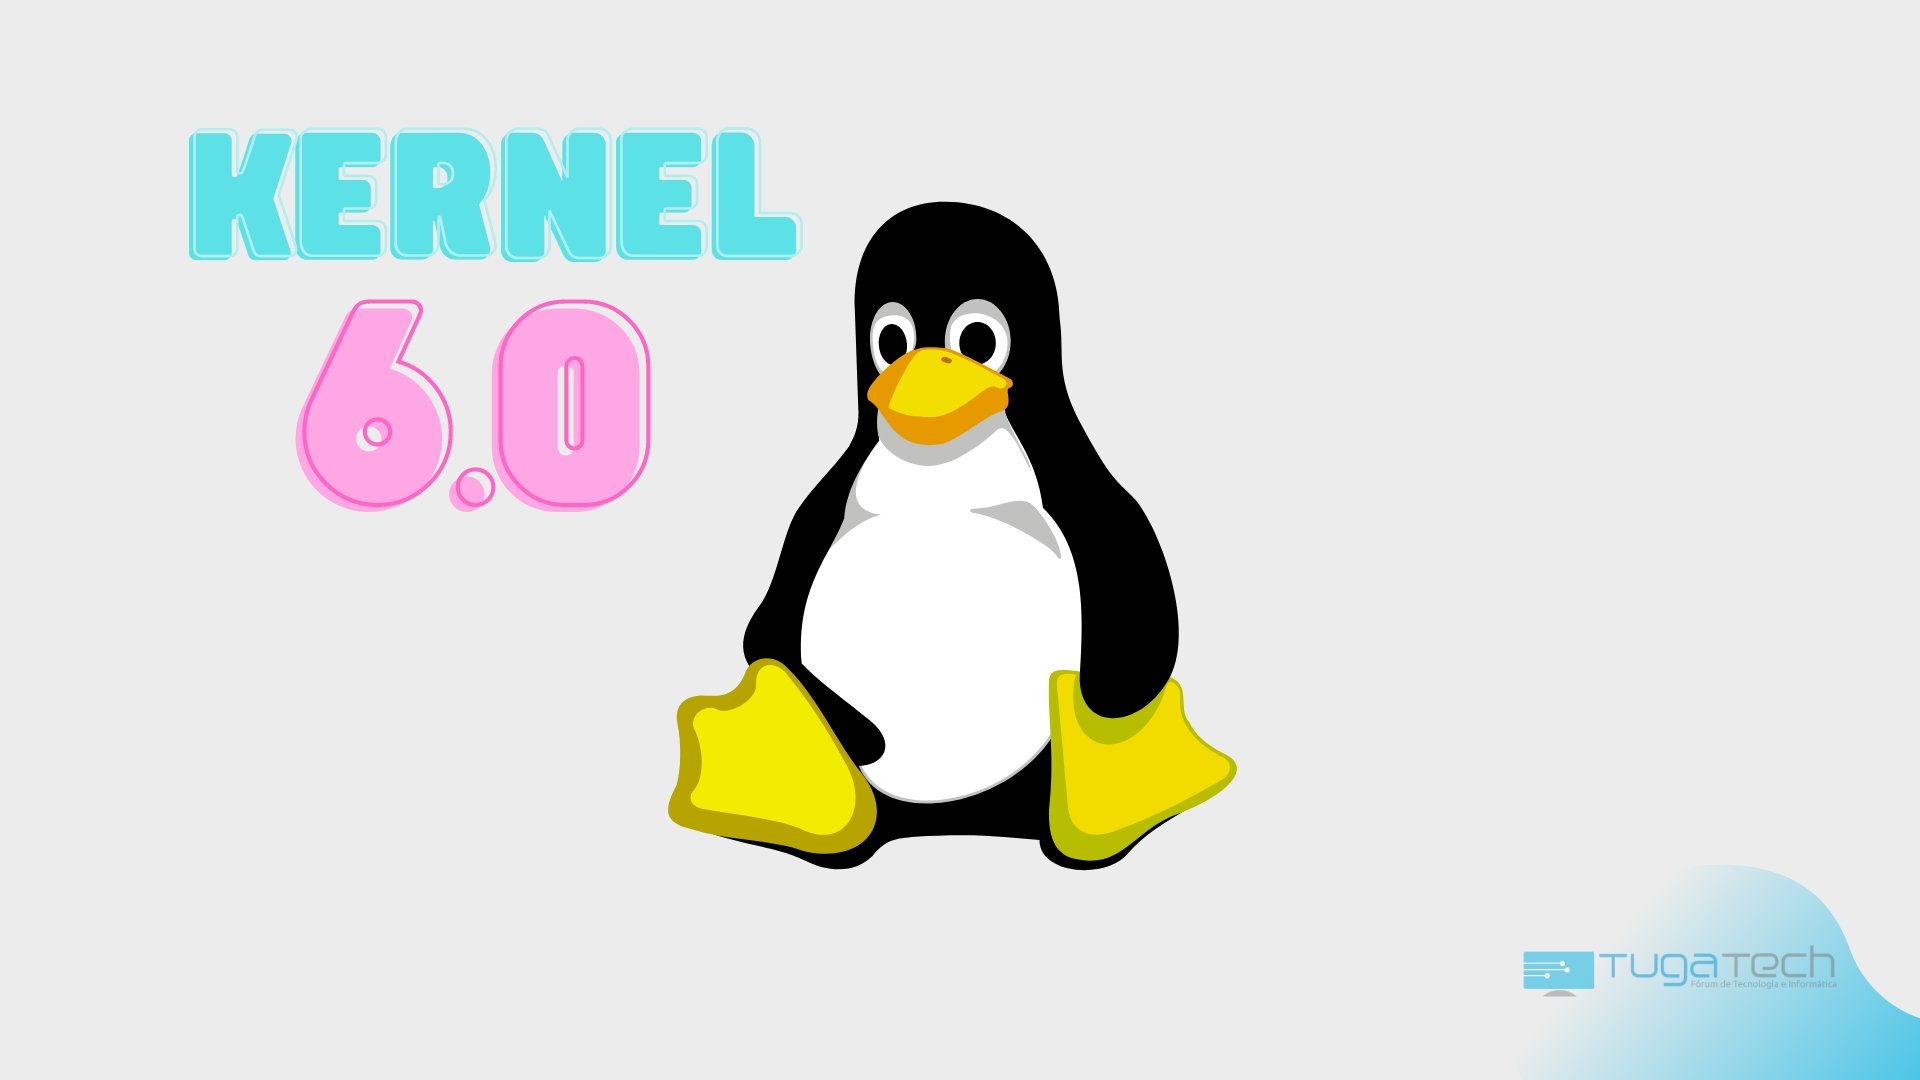 Linux Kernel 6.0